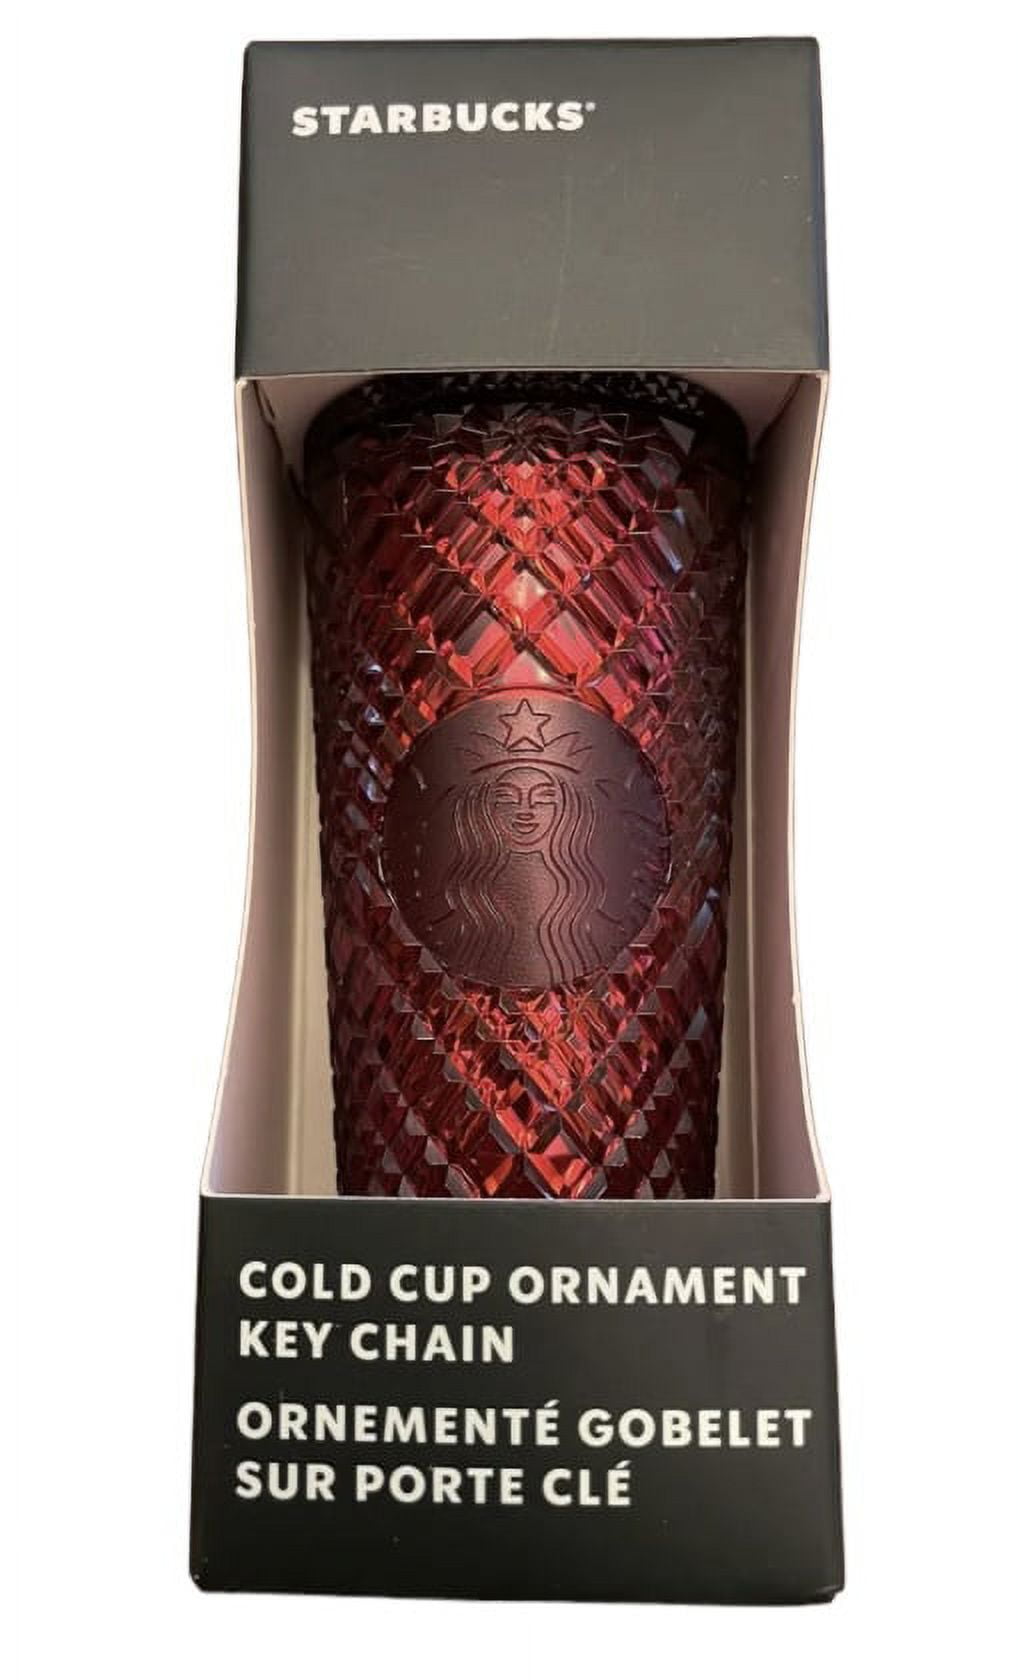 2021 Cold Cup Ornament Key Chain - Starbucks Ornament